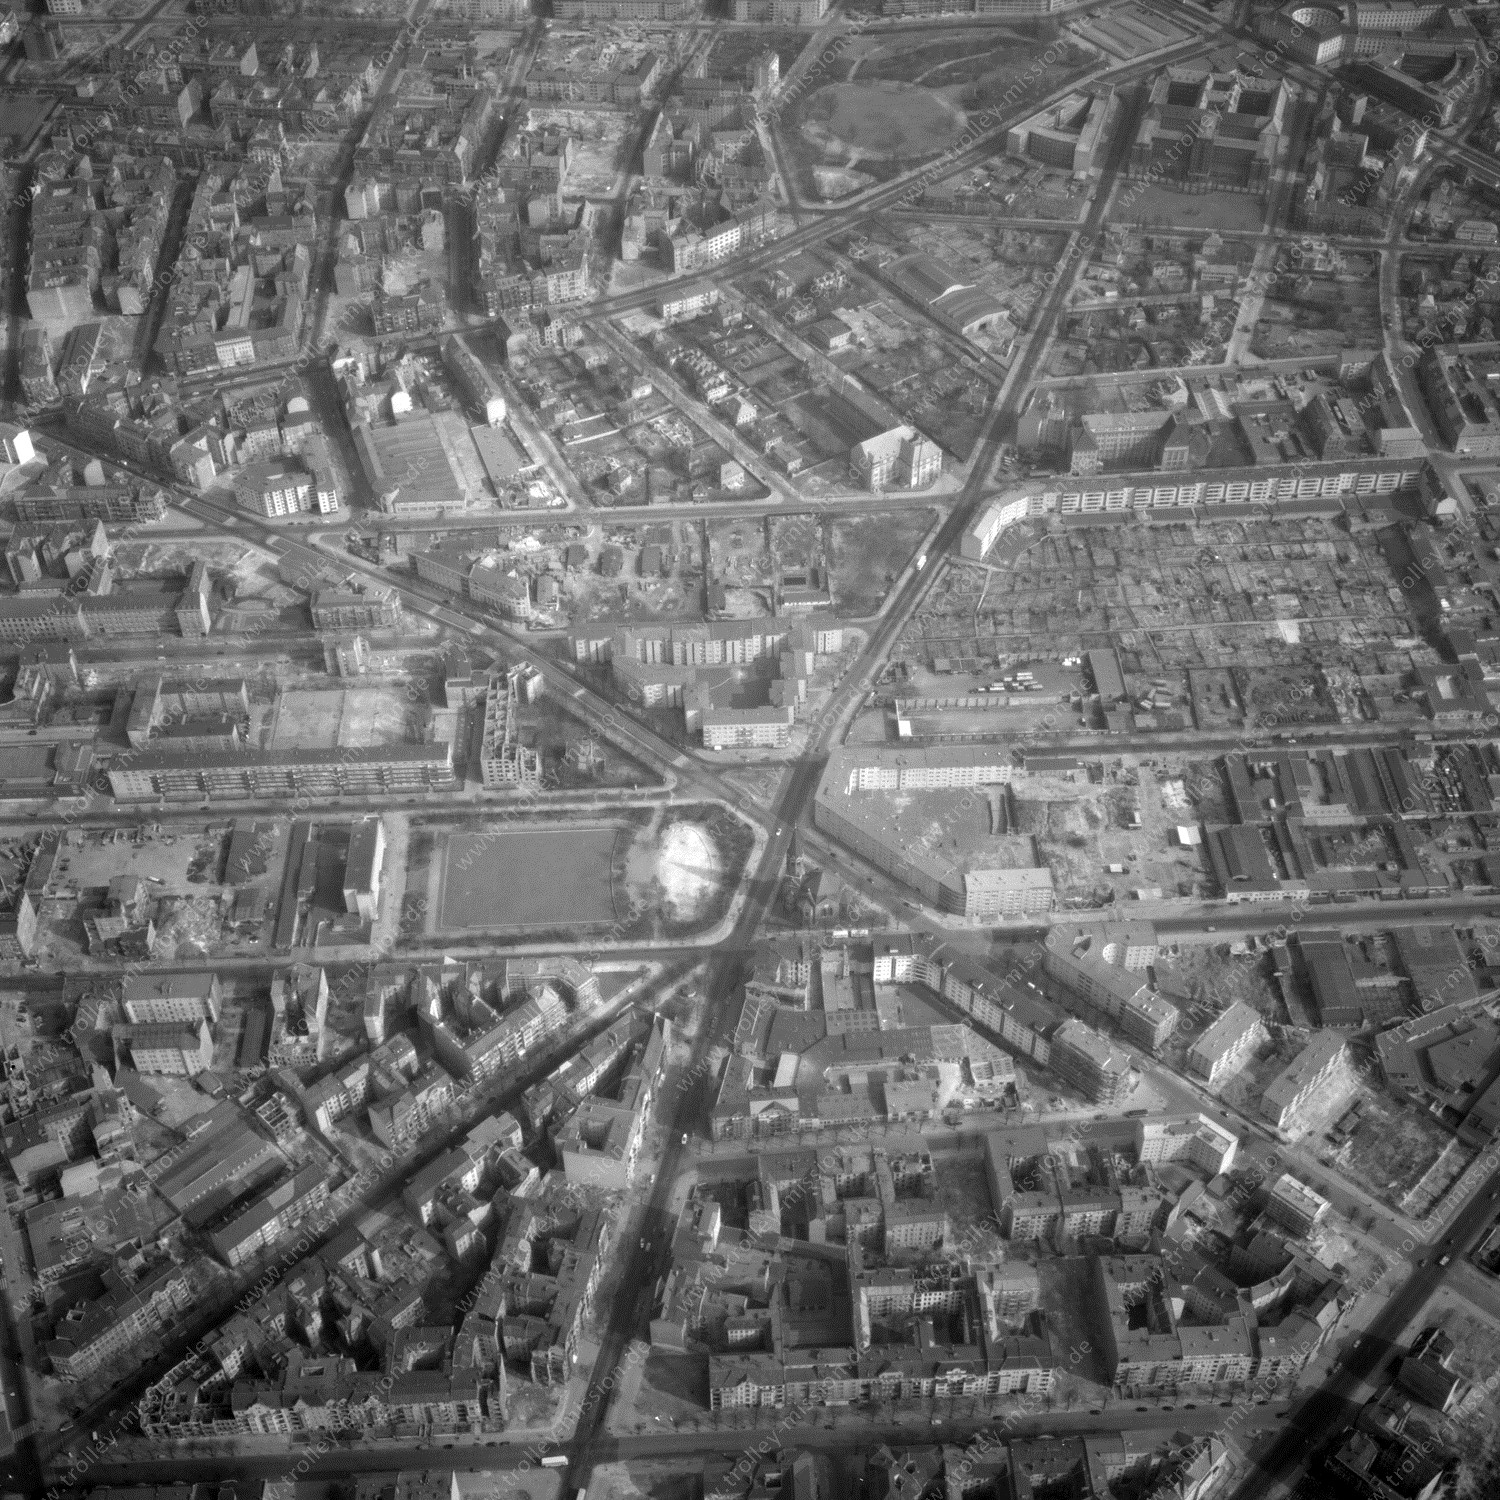 Alte Fotos und Luftbilder von Berlin - Luftbildaufnahme Nr. 09 - Historische Luftaufnahmen von West-Berlin aus dem Jahr 1954 - Flugstrecke Bravo